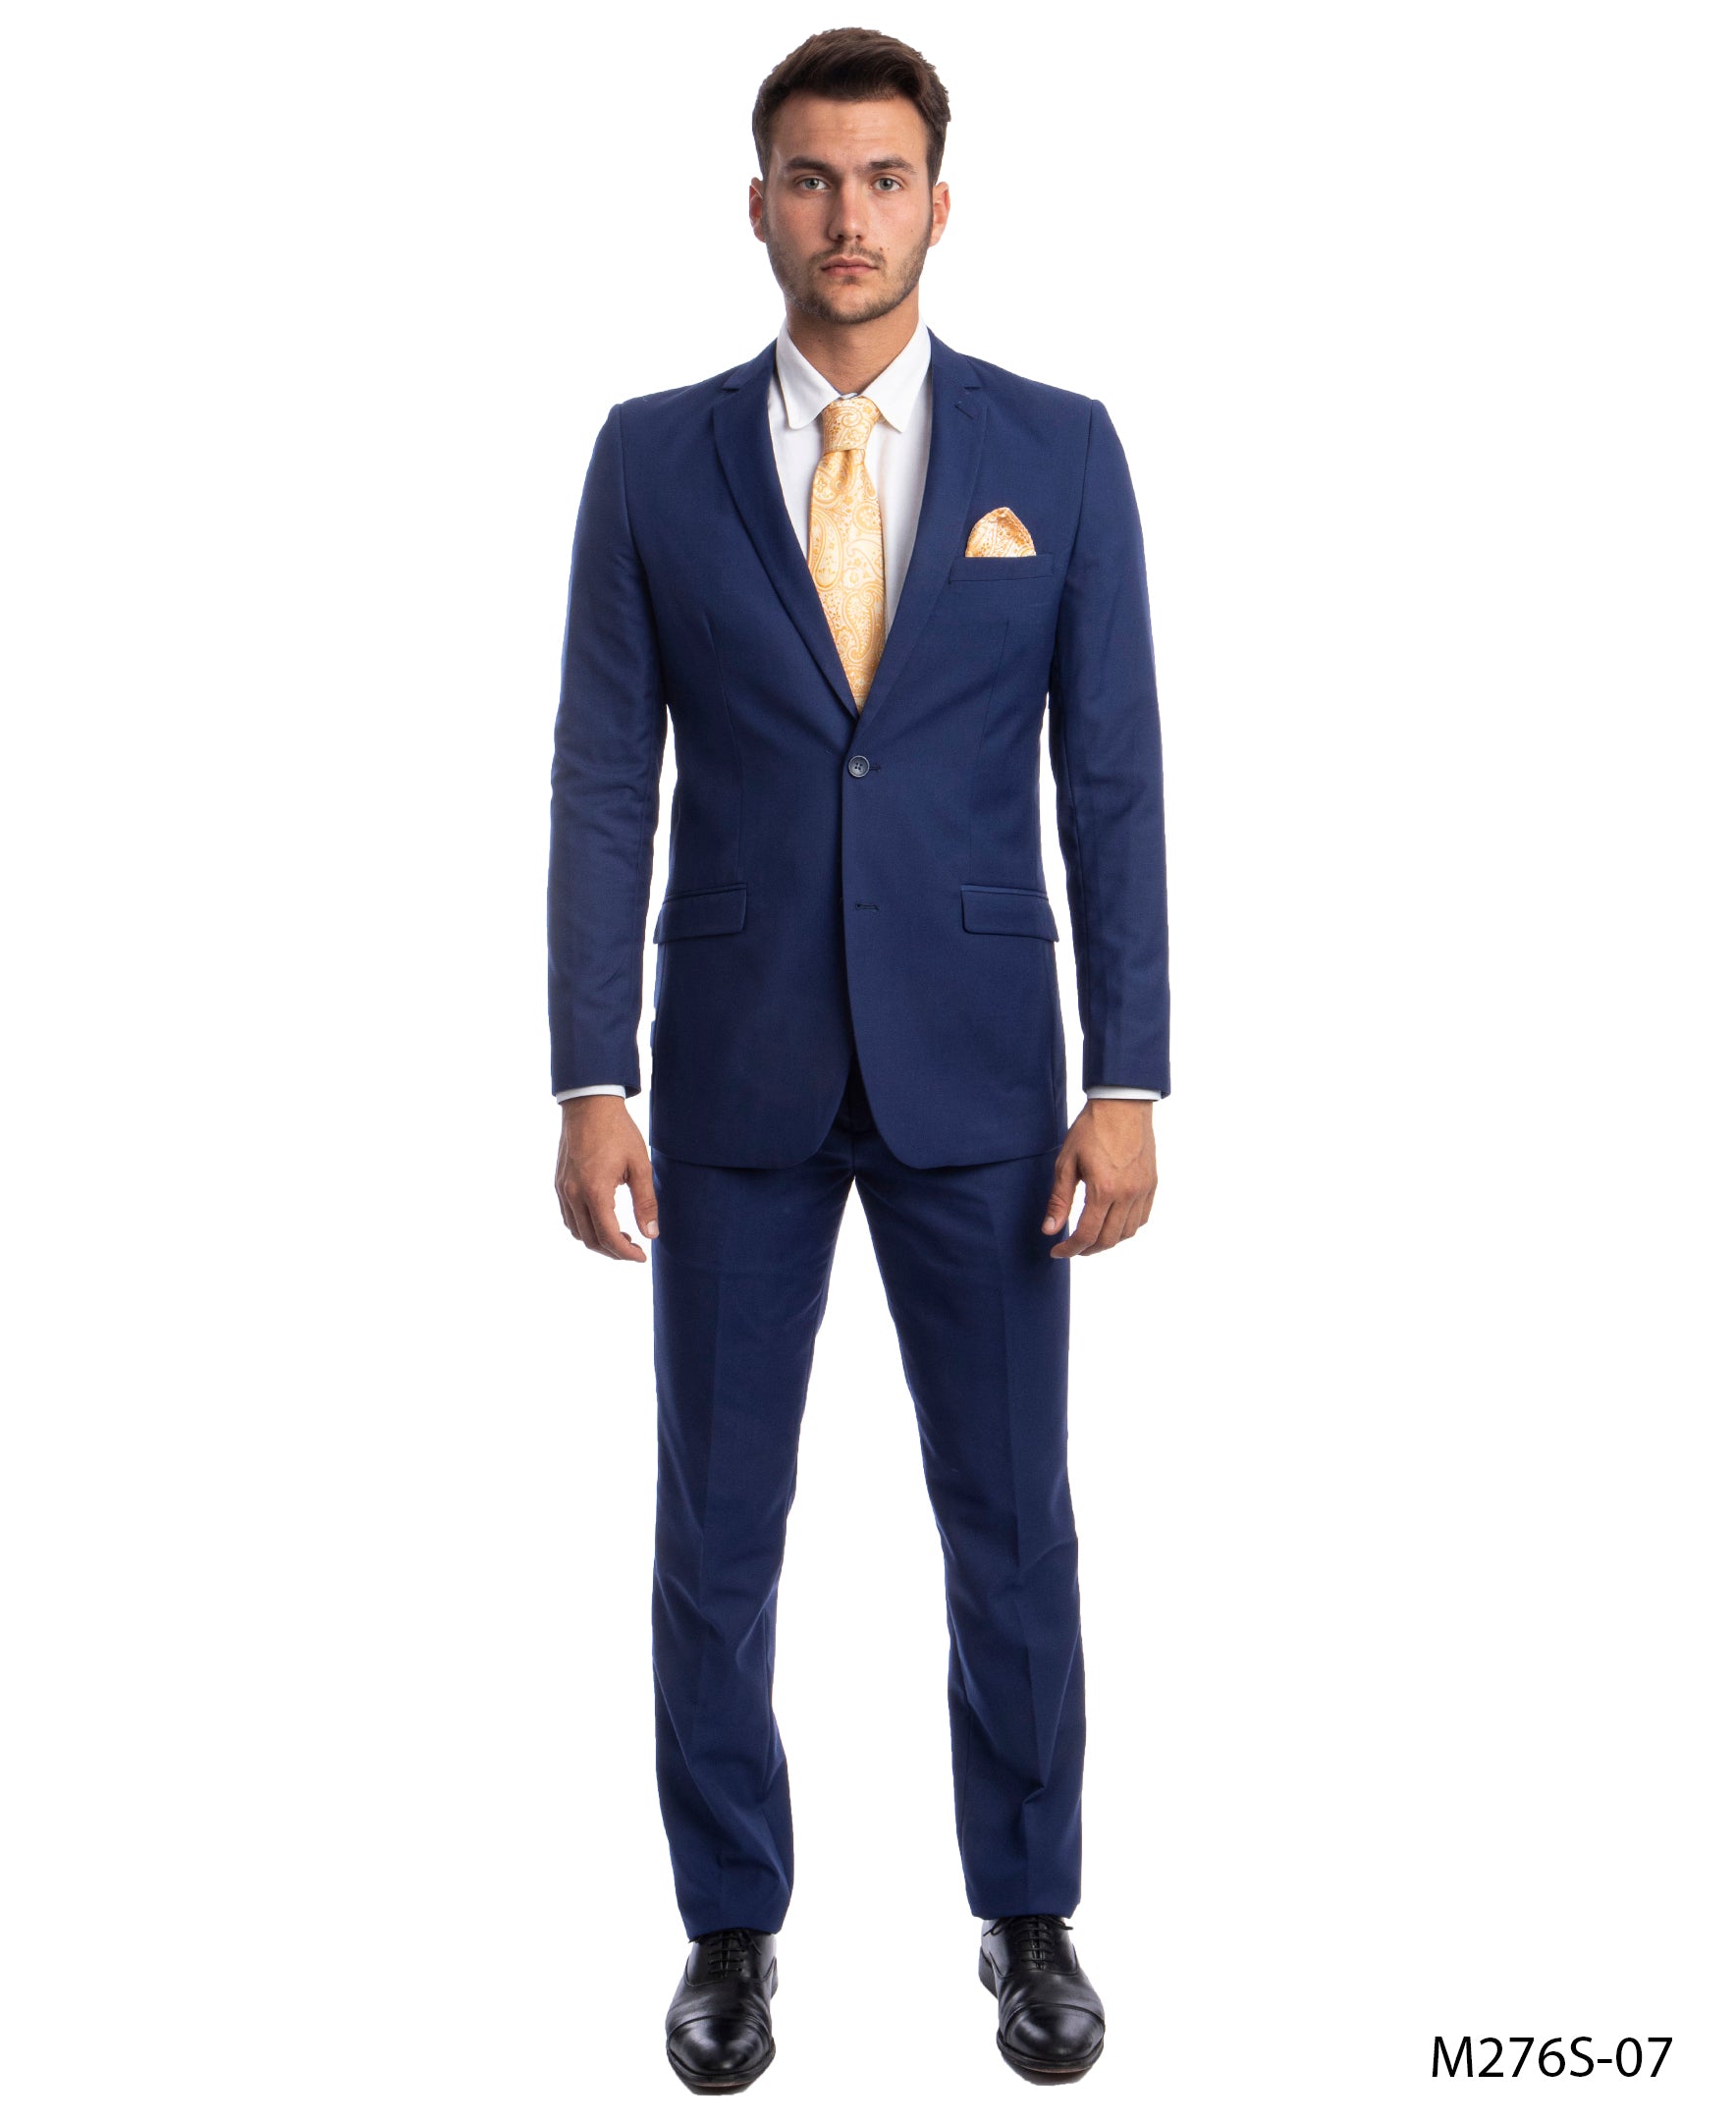 title:Azzuro Blue Suits 2 PC Slim Fit;color:Blue